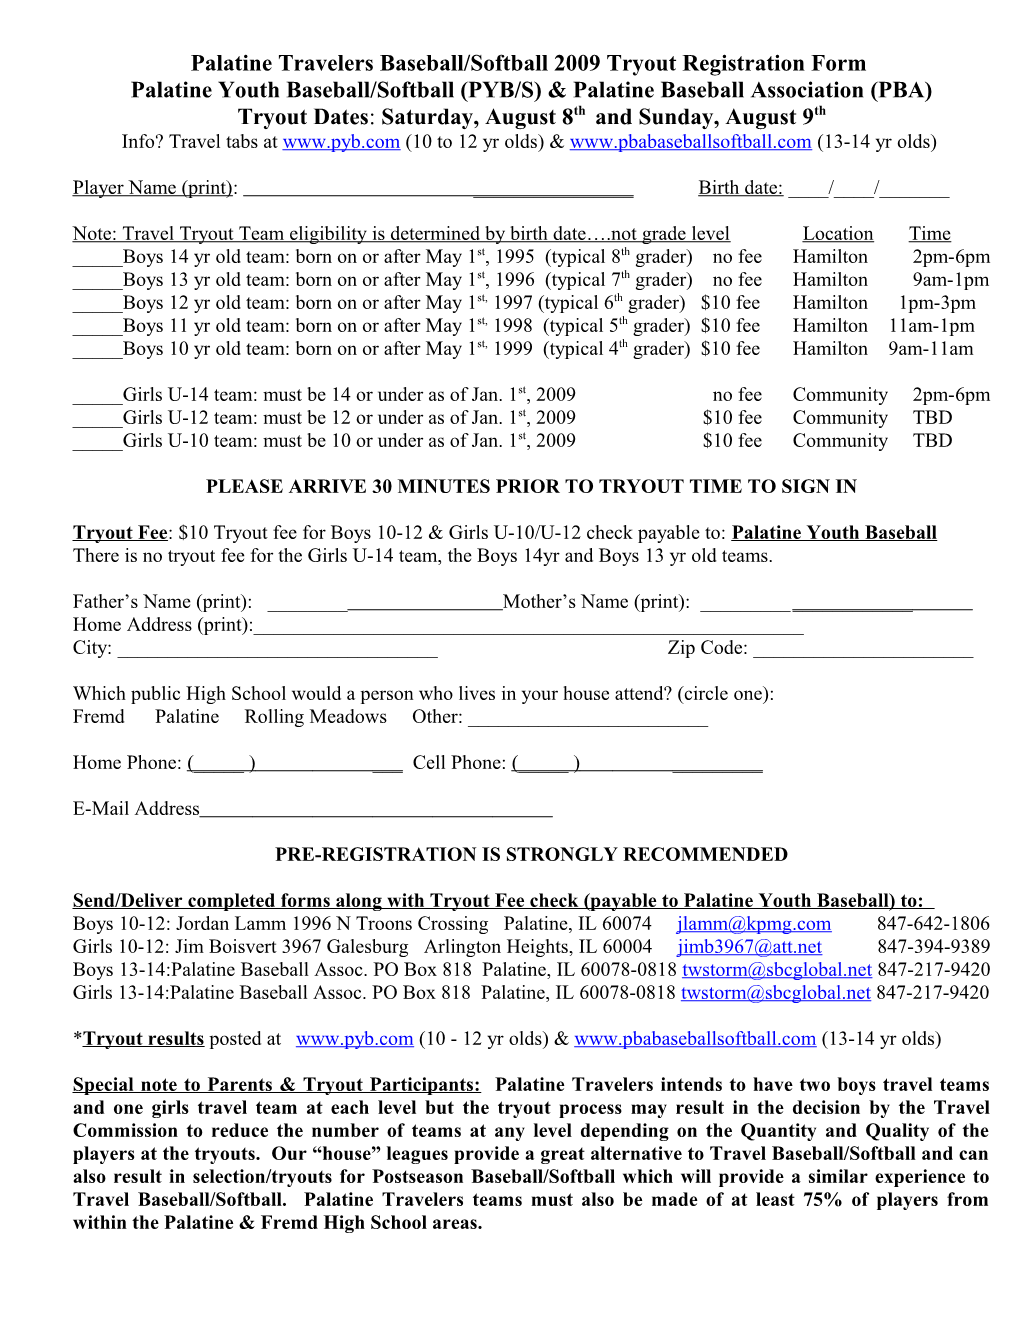 Palatine Travelers Baseball/Softball Tryout Registration Form